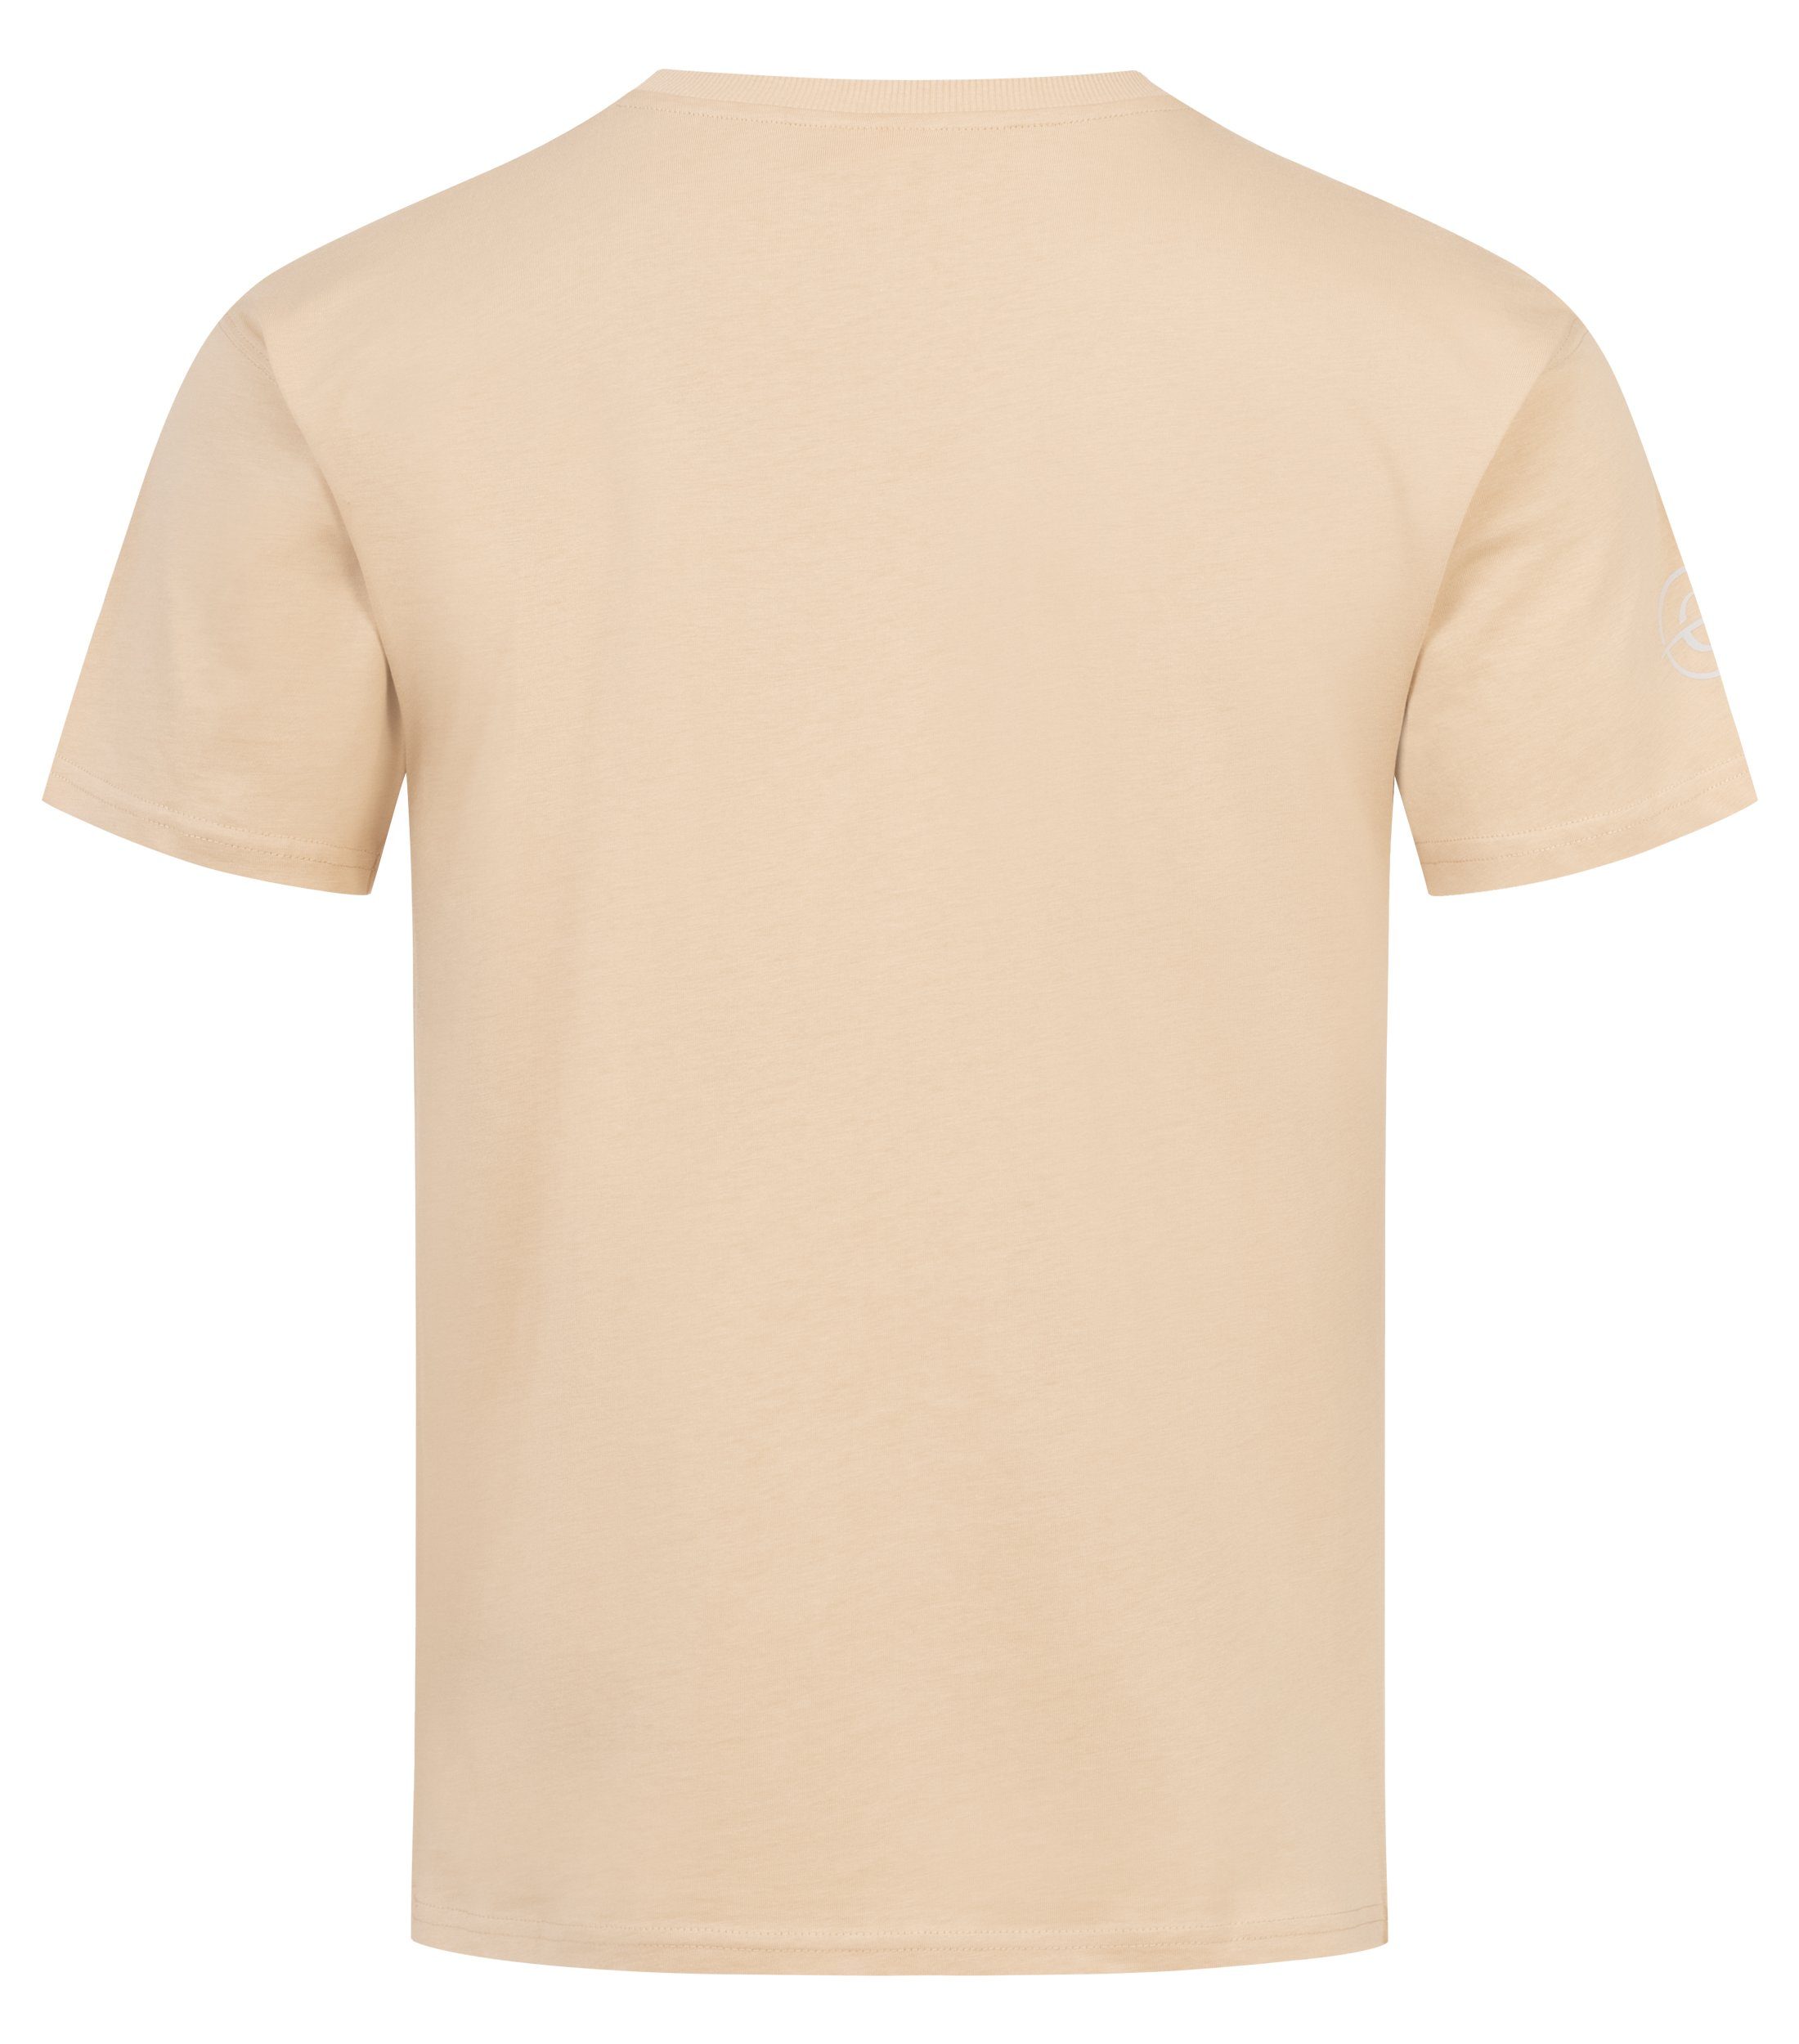 Chilled Mercury T-Shirt Baumwolle Freizeit Rundhals Shirt/ Cream Irish mit Brusttasche